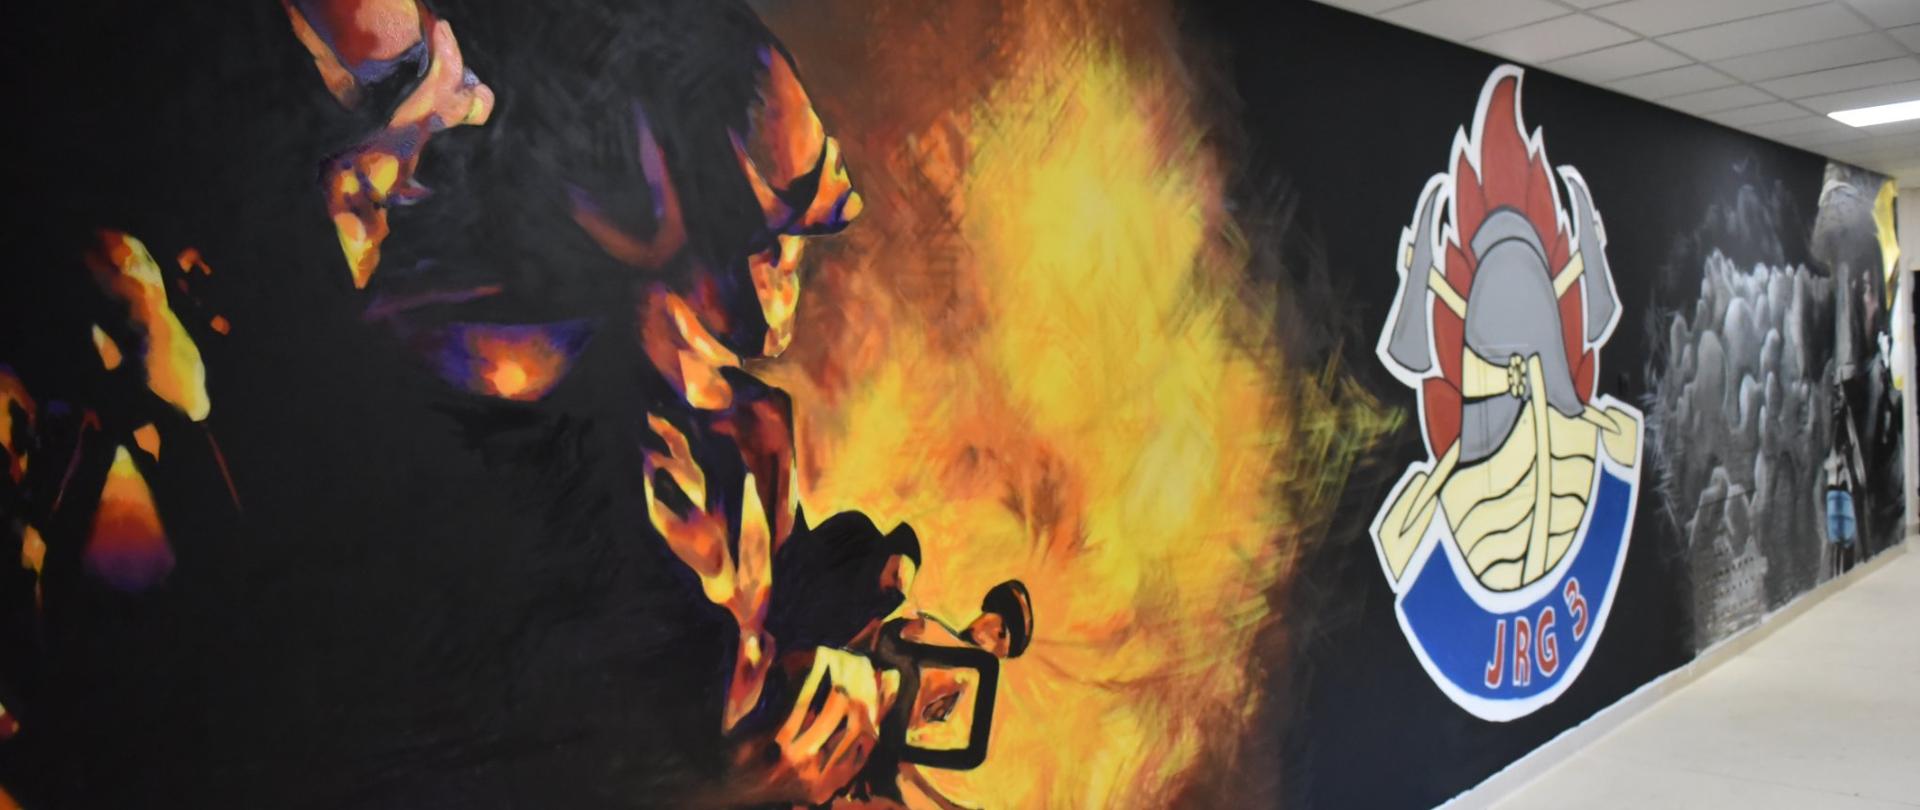 Mural przedstawiający strażaków gaszących pożar oraz logo JRG Nr 3 w Łodzi